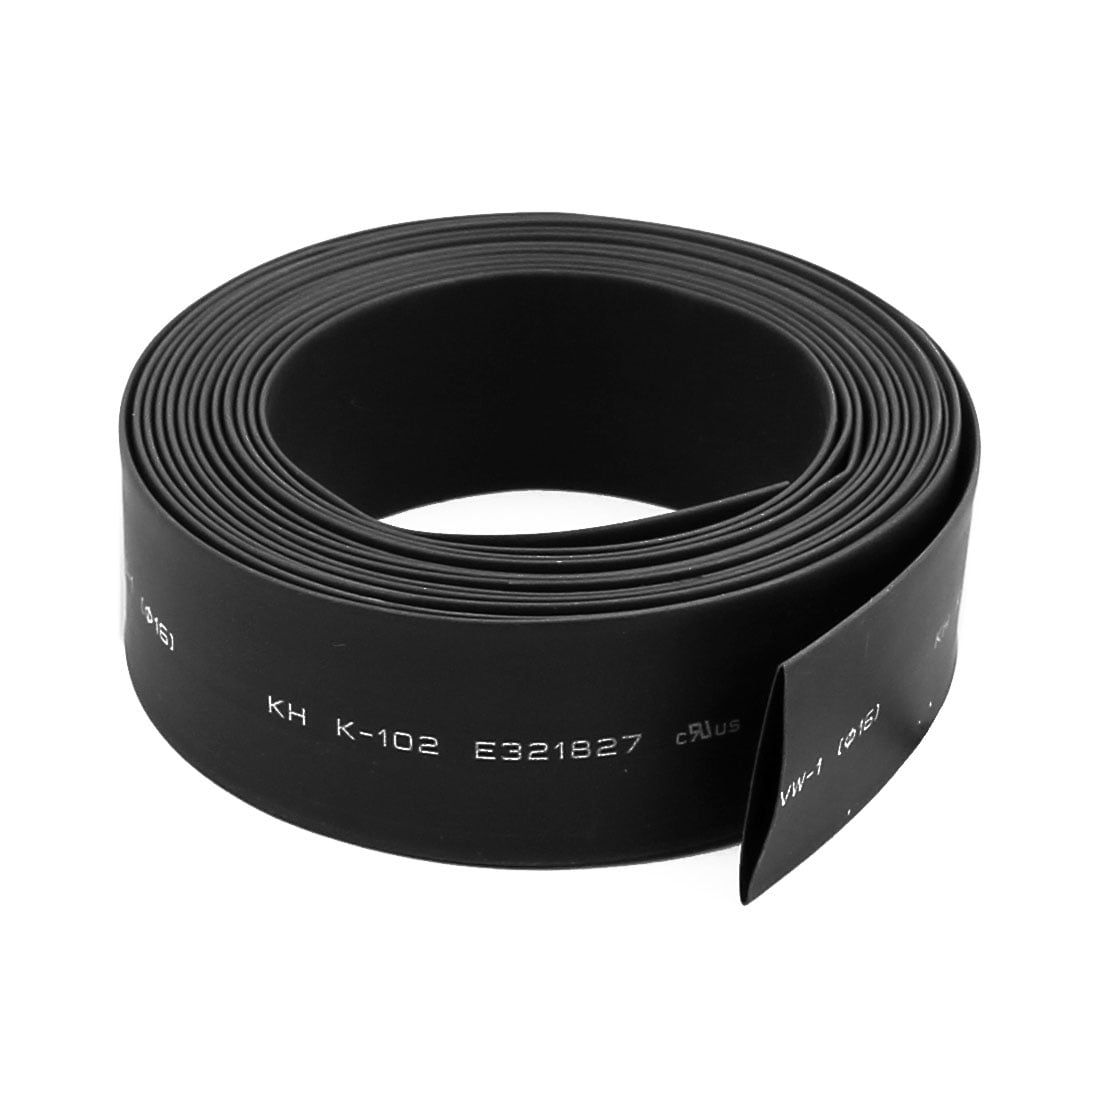 5Meters Φ20mm 2:1 Black Heatshrink Tube Sleeving Cable Heat Shrink Tubing Wrap 